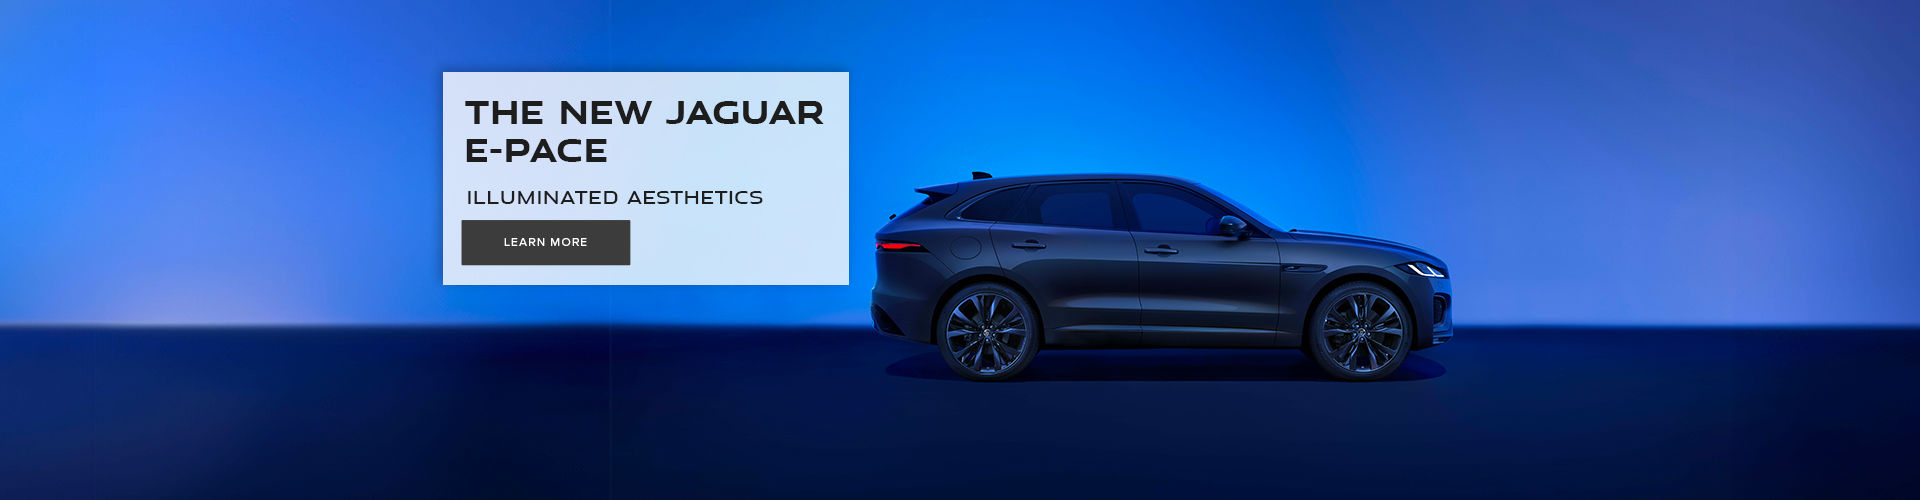 The new jaguar e-pace